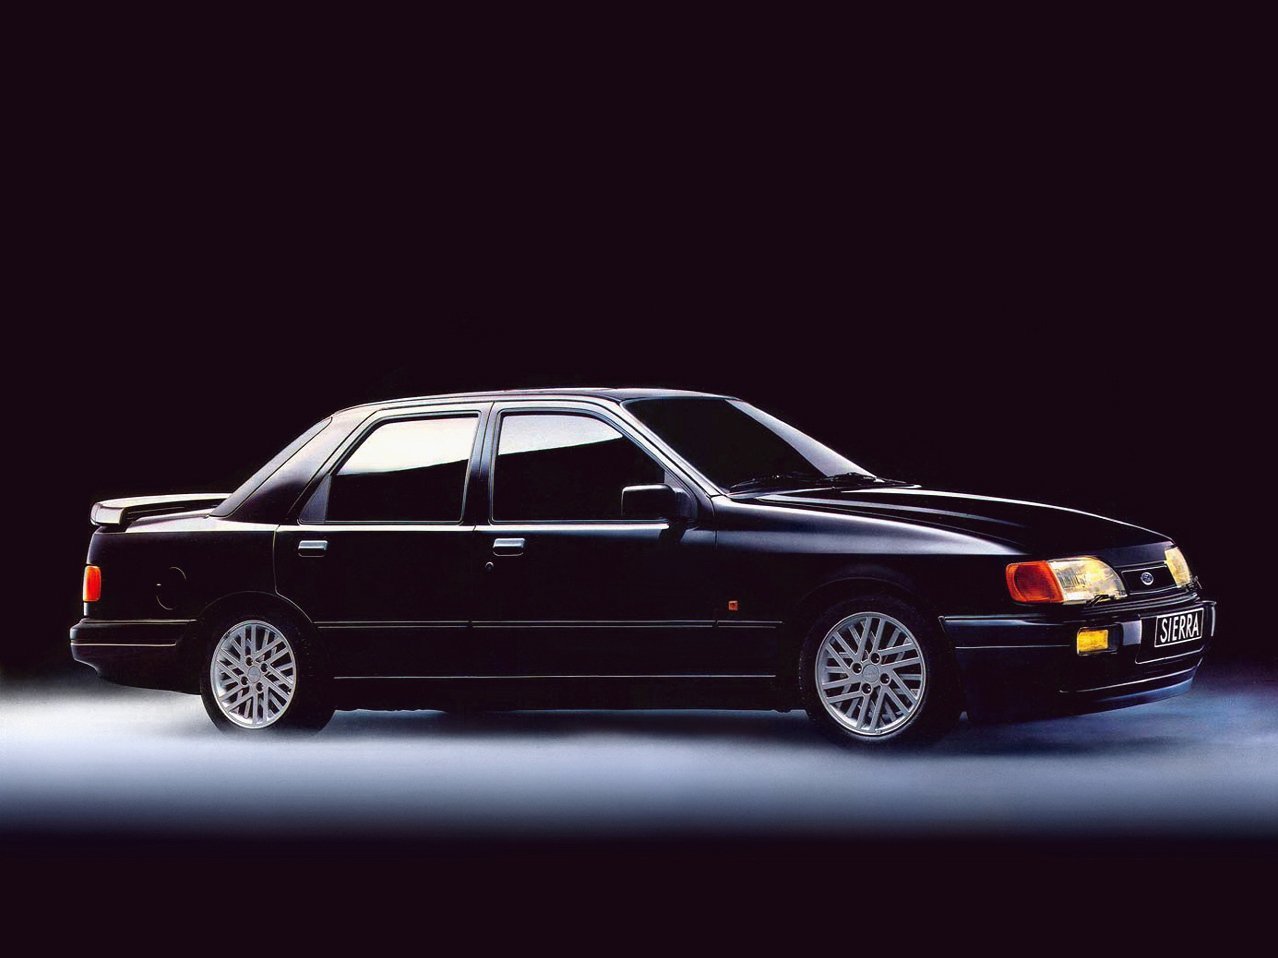 Ford Sierra 1987 - 1992